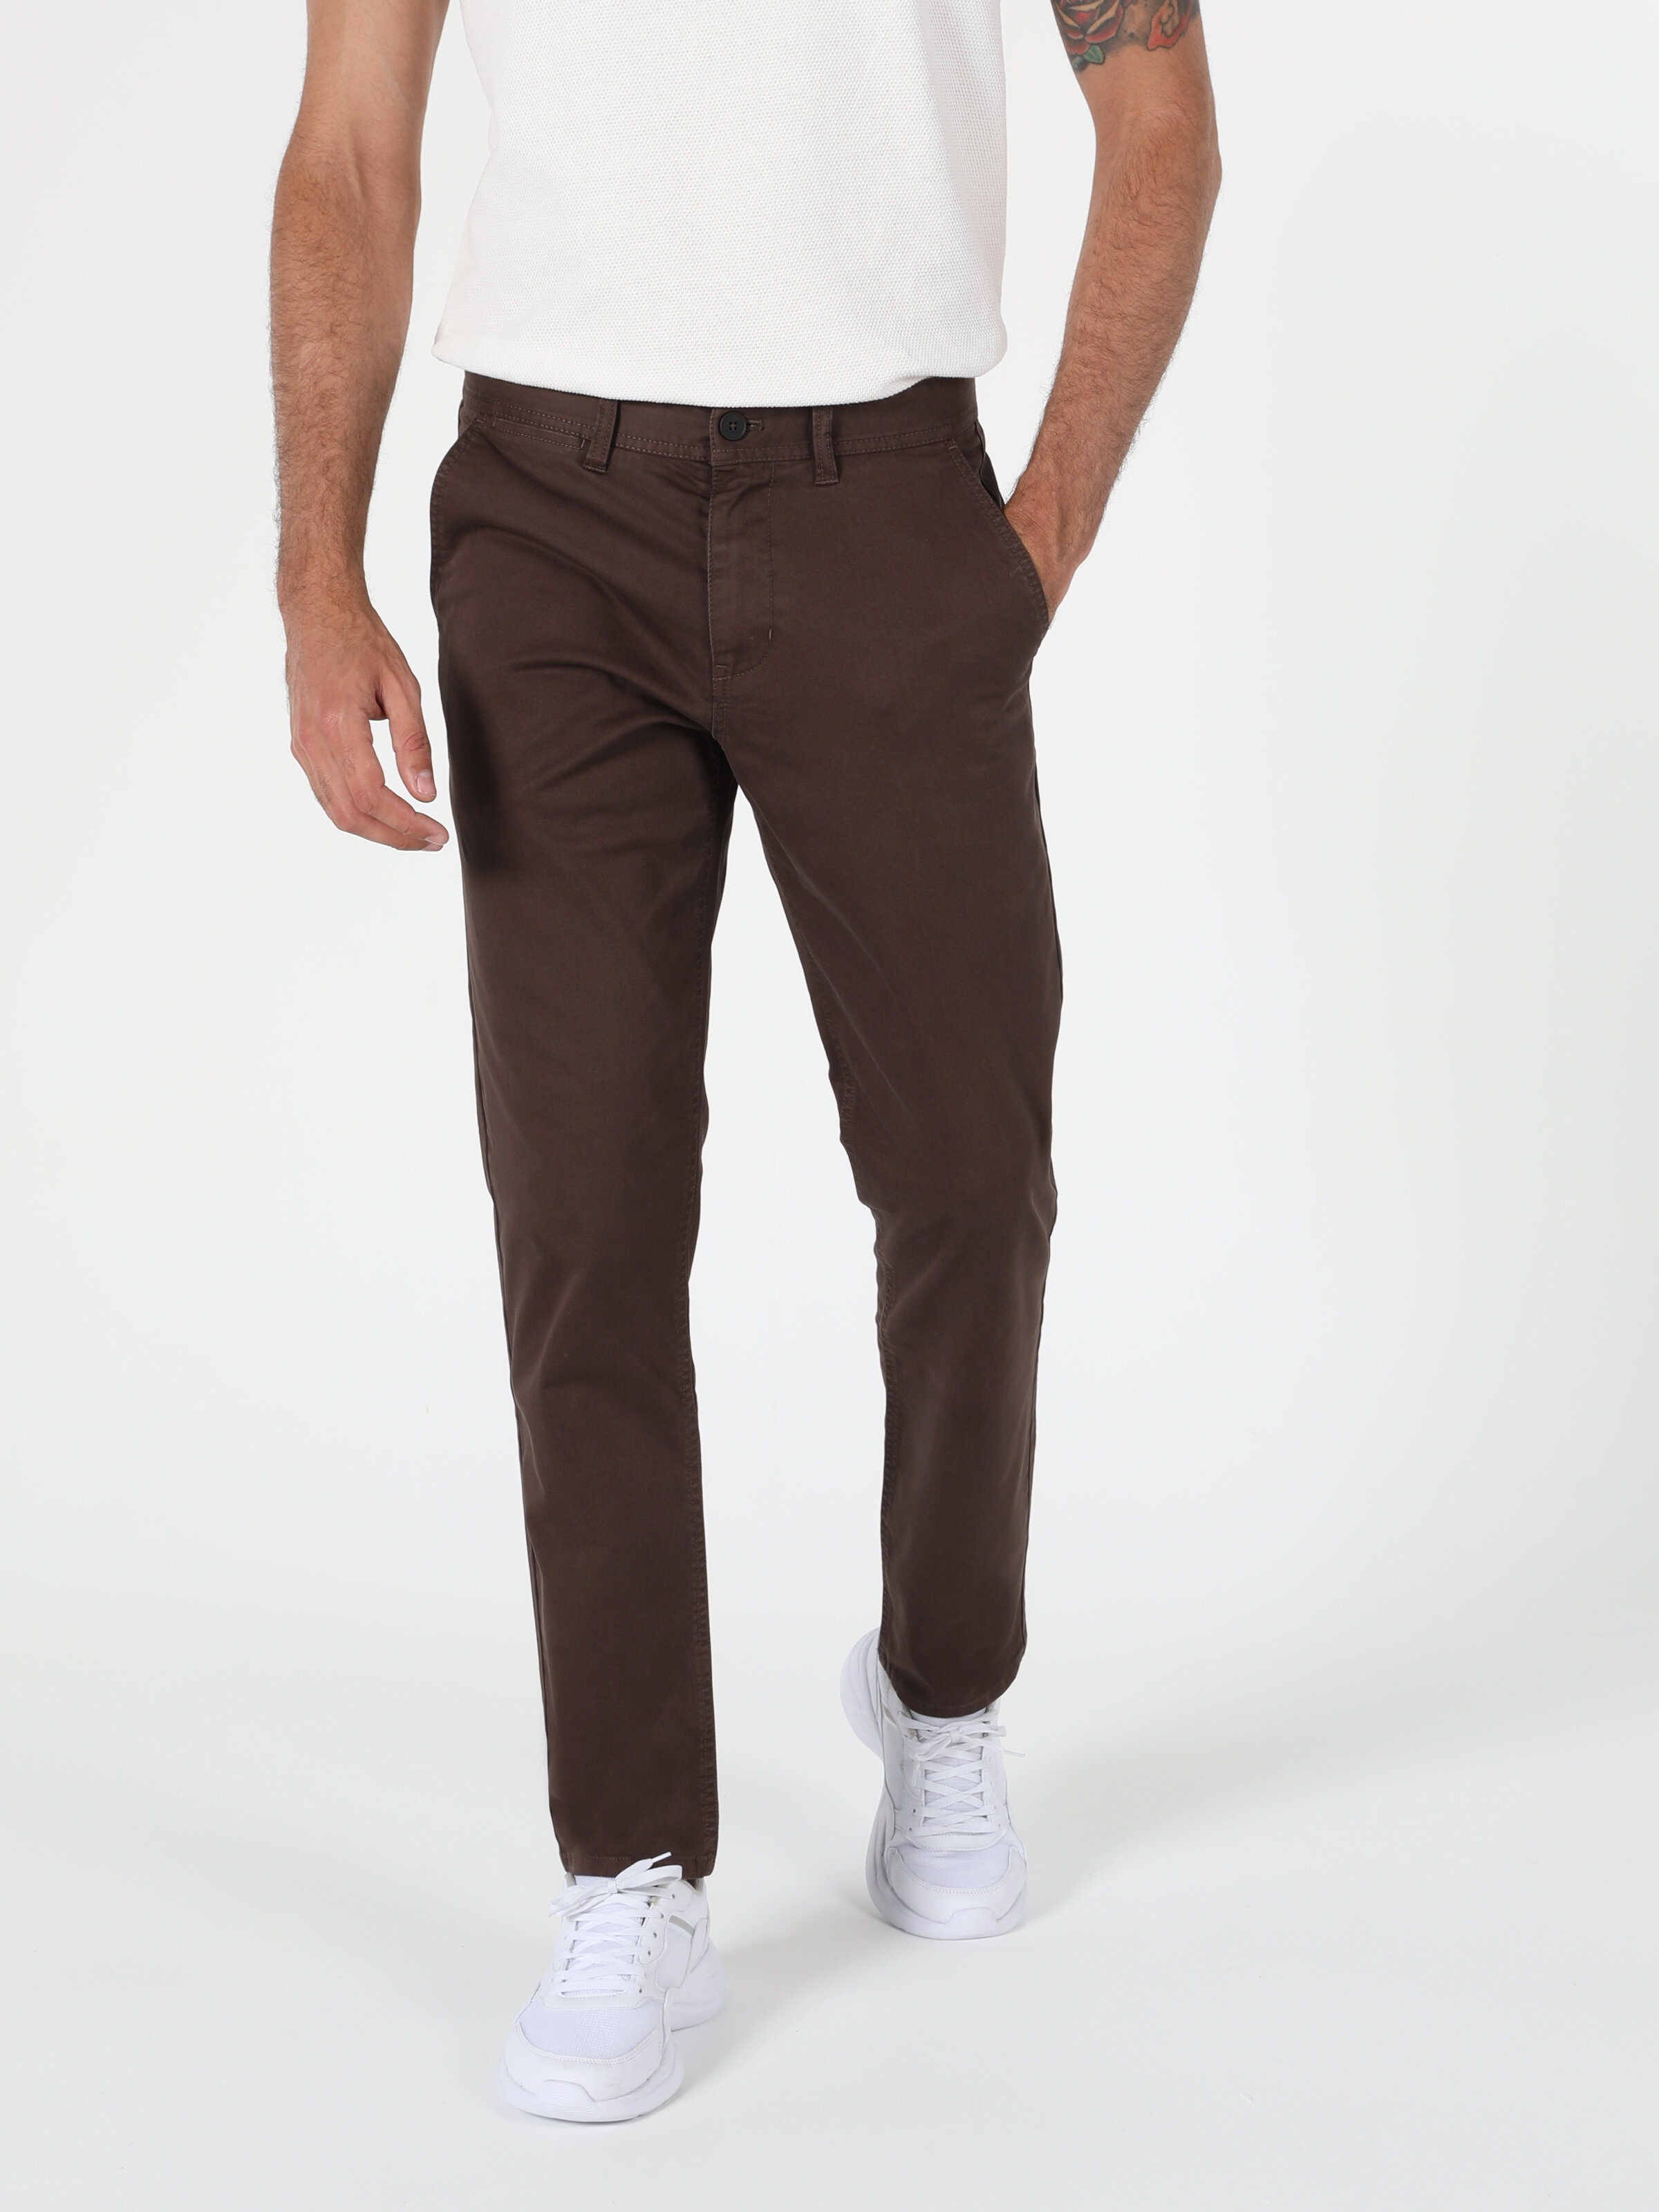 Afficher les détails de Pantalon Homme Marron Coupe Regular Taille Moyenne Coupe Normale Jambe Droite